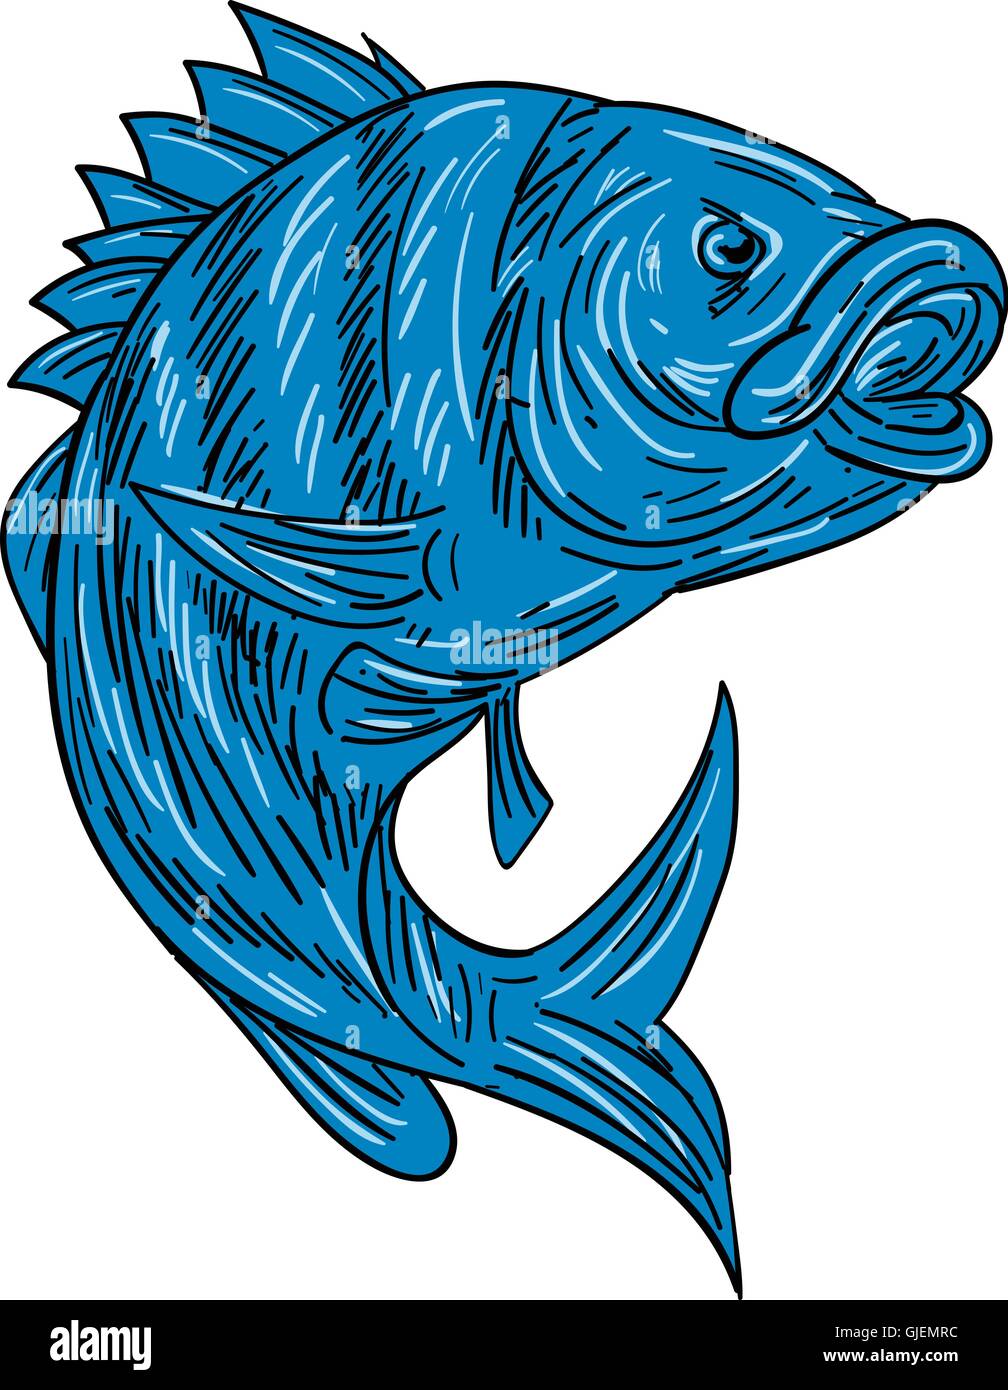 Croquis dessin illustration d'un style sheepshead (Archosargus probatocephalus) un poisson marin situé sur fond blanc isolé. Illustration de Vecteur